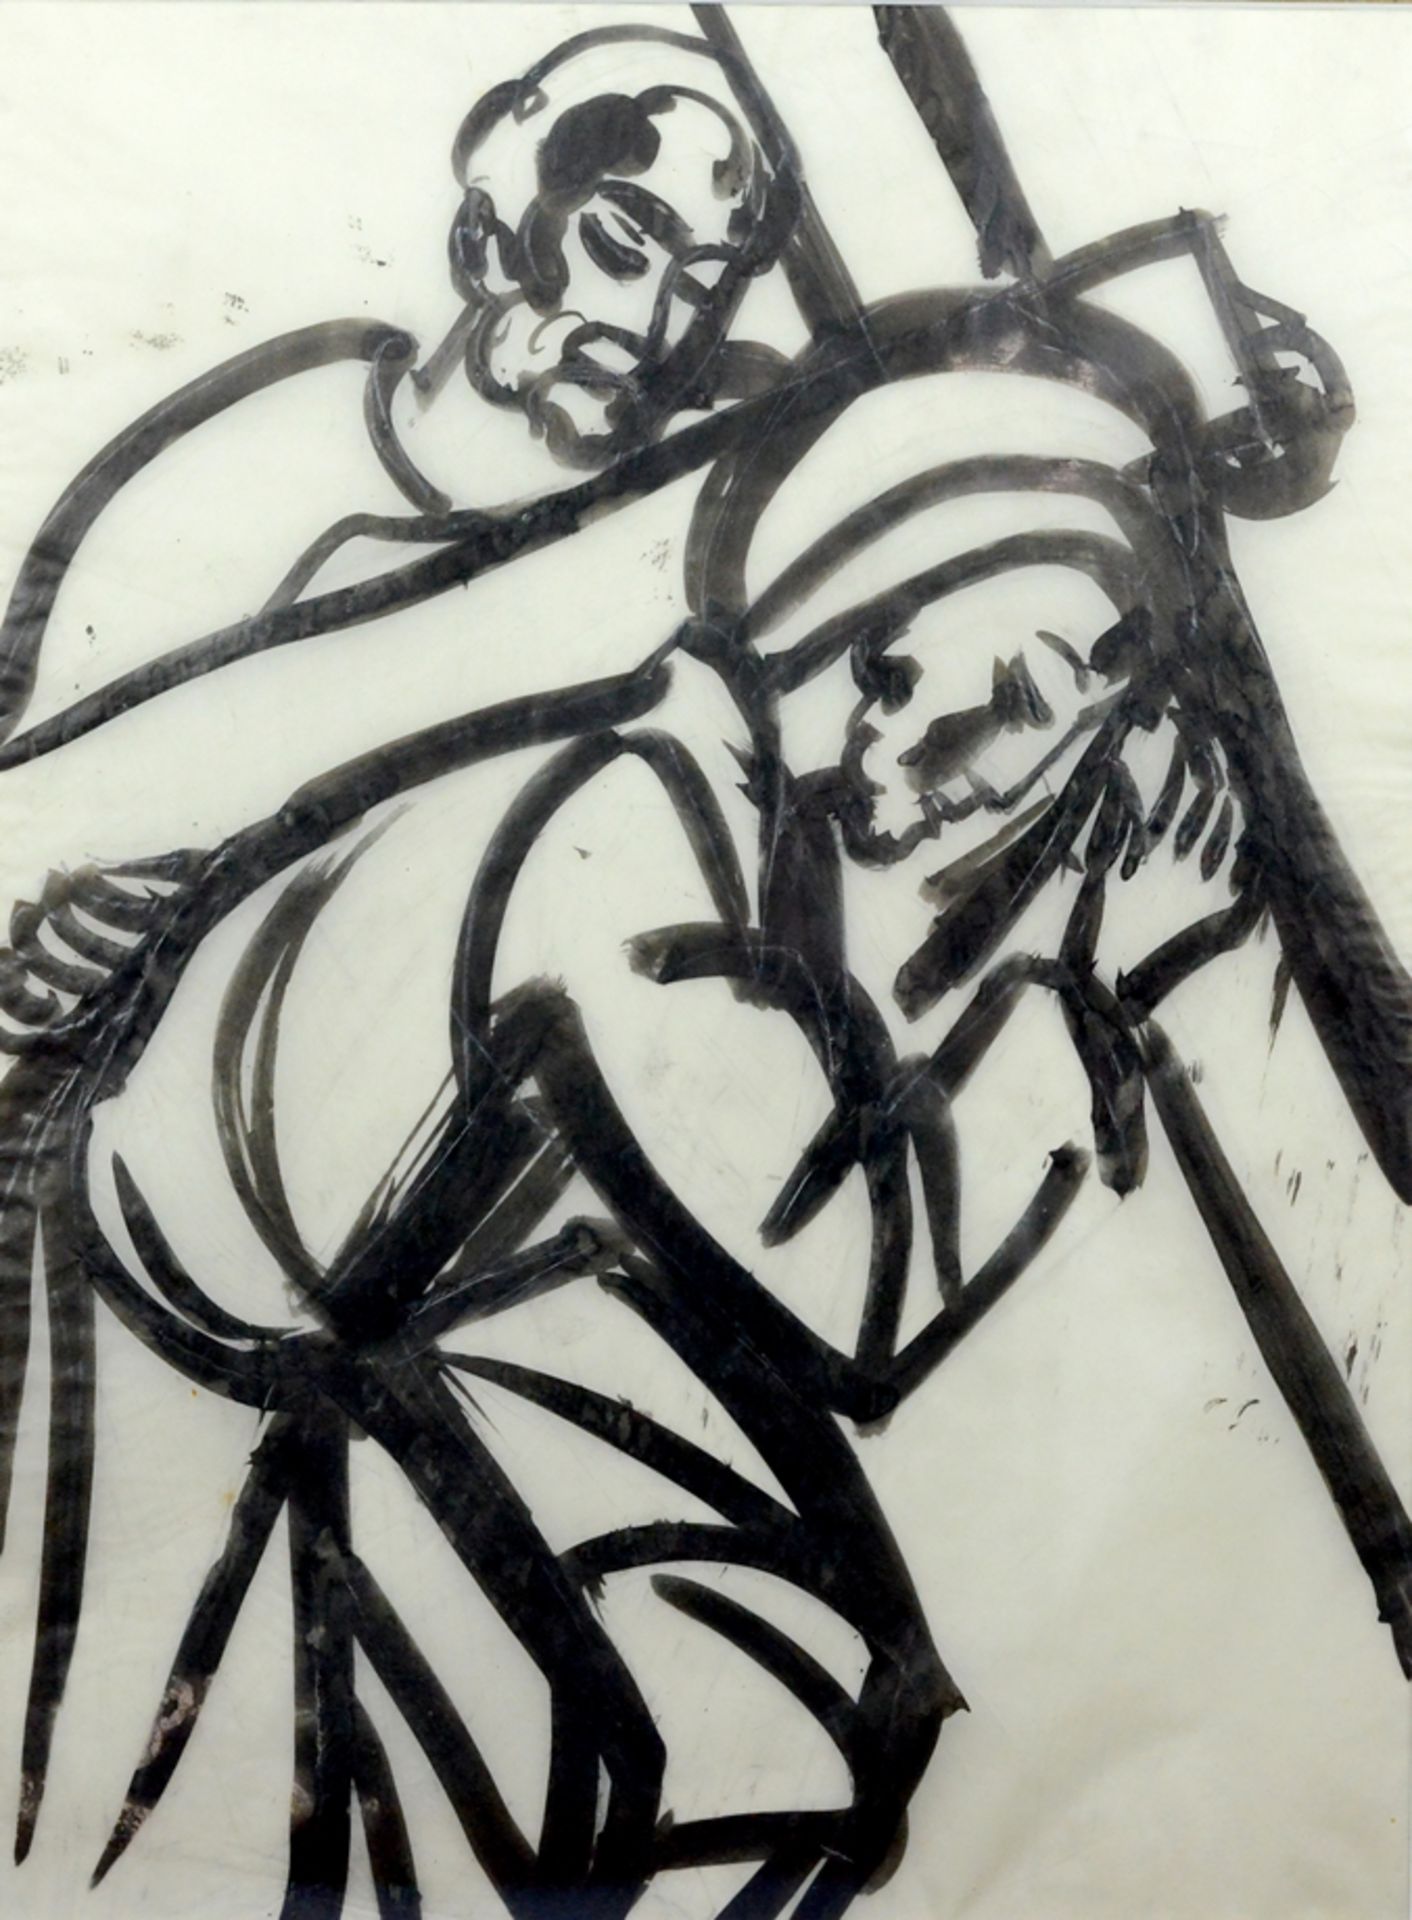 Breinlinger, Hans (1888 - 1963 Constance), "Kreuztragung", ink and pencil on paper, 41x30.5 cm, pas